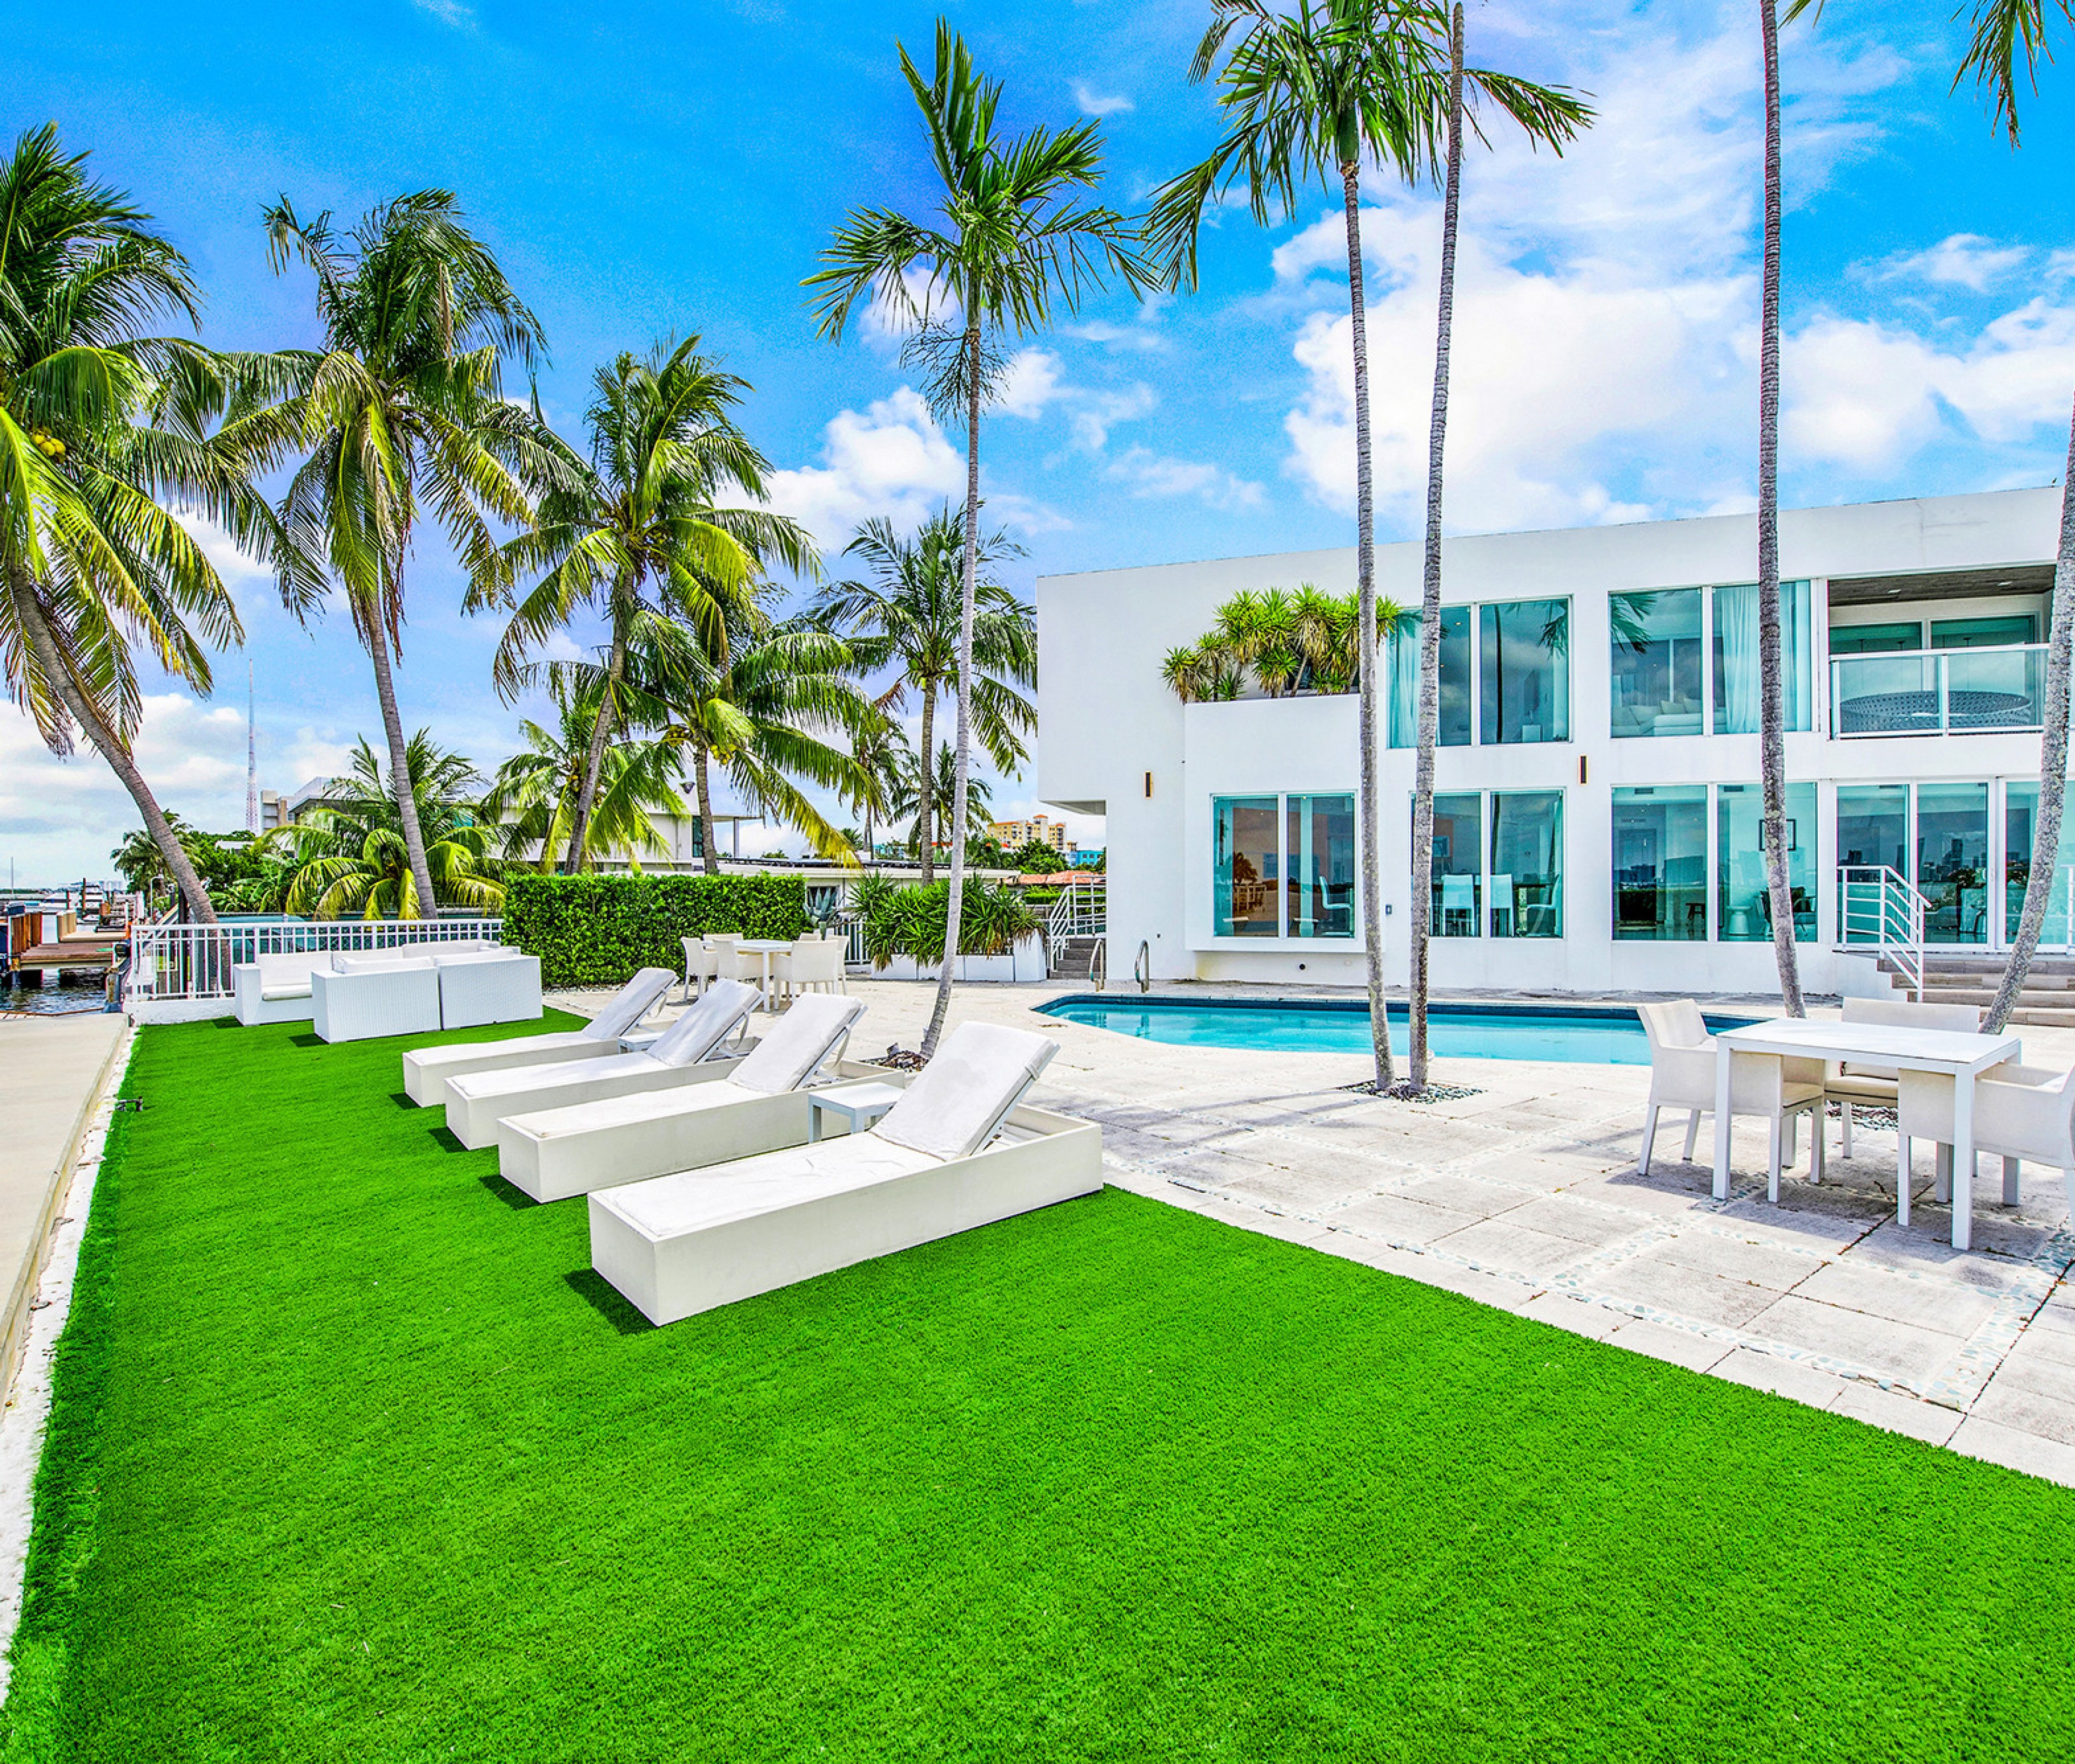 Miami 155 - Florida Spring break vacation rentals